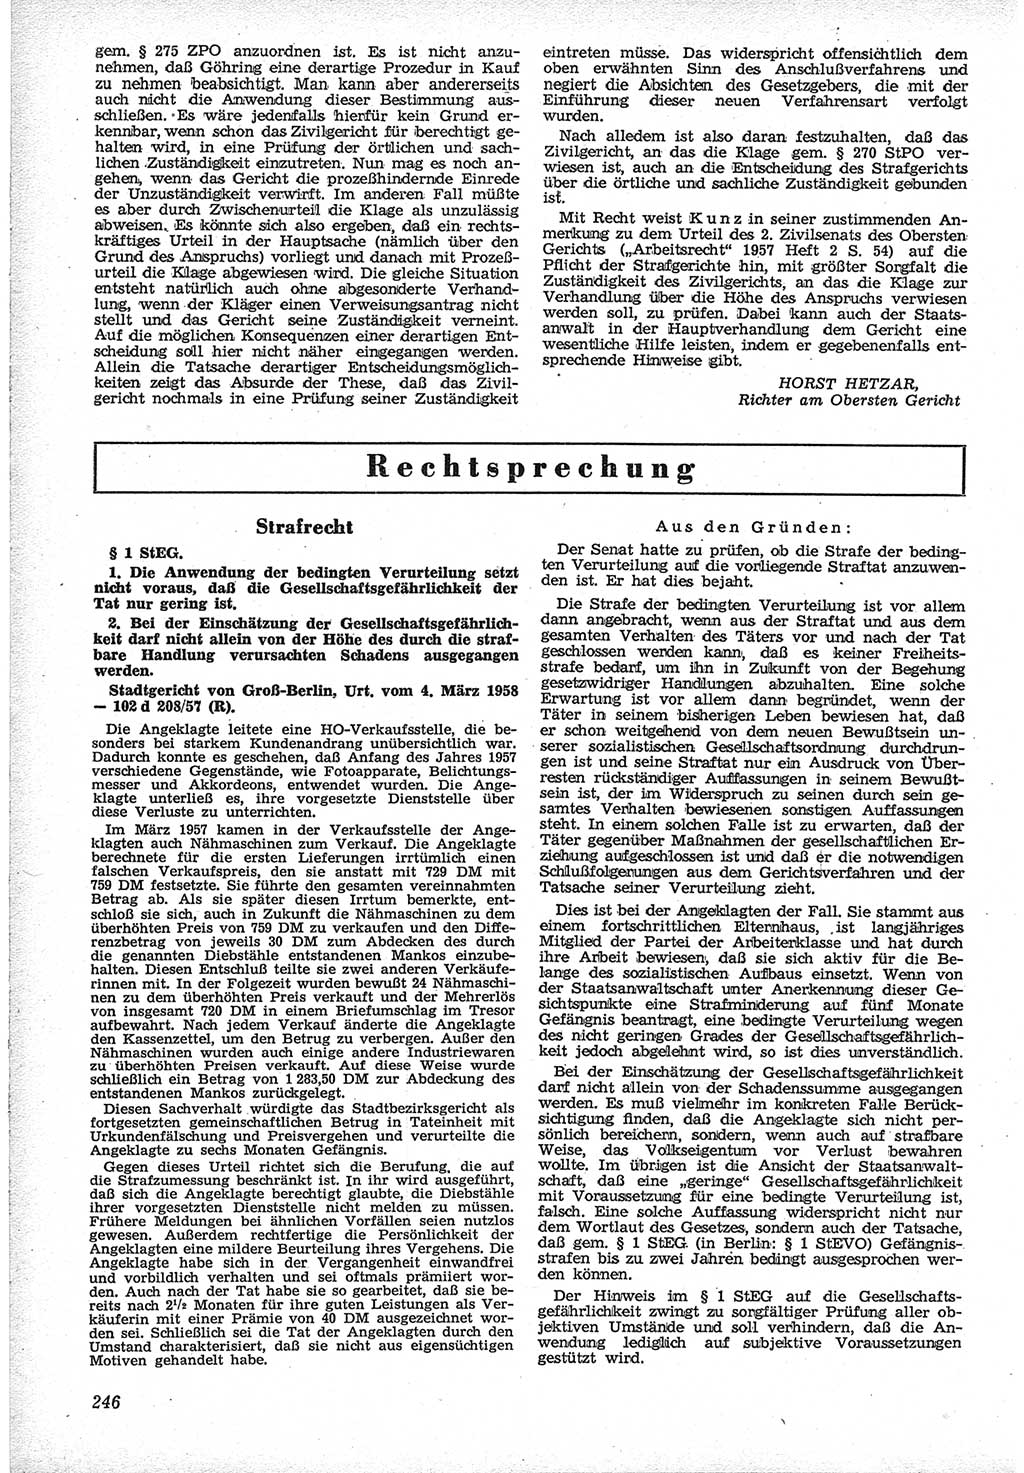 Neue Justiz (NJ), Zeitschrift für Recht und Rechtswissenschaft [Deutsche Demokratische Republik (DDR)], 12. Jahrgang 1958, Seite 246 (NJ DDR 1958, S. 246)